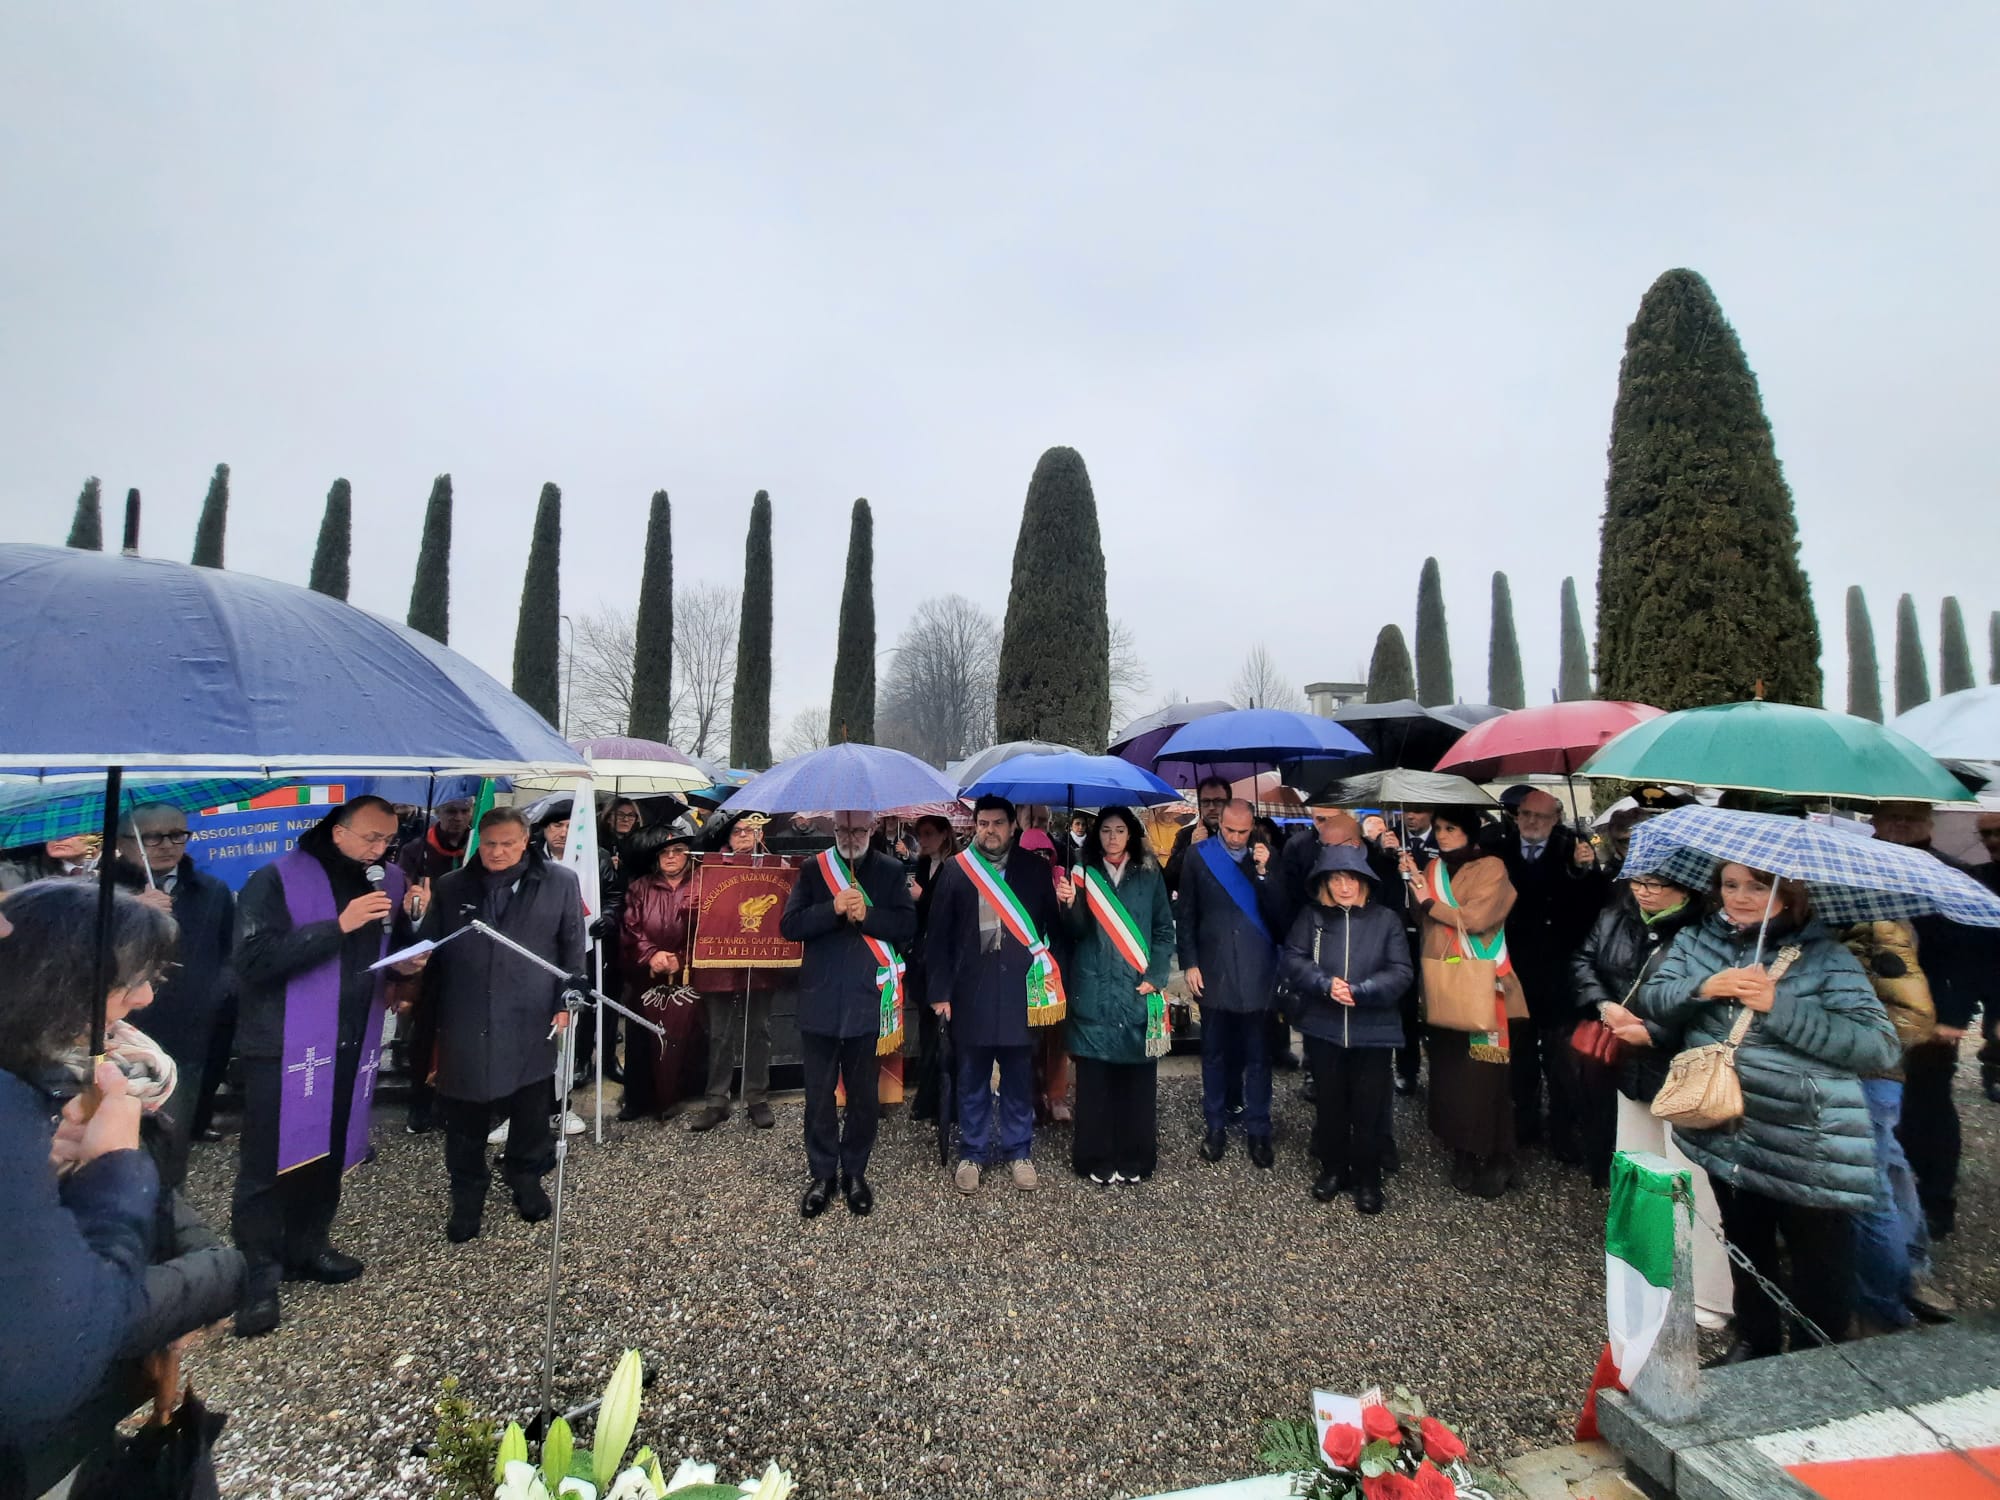 Luca Attanasio cimitero preghiera